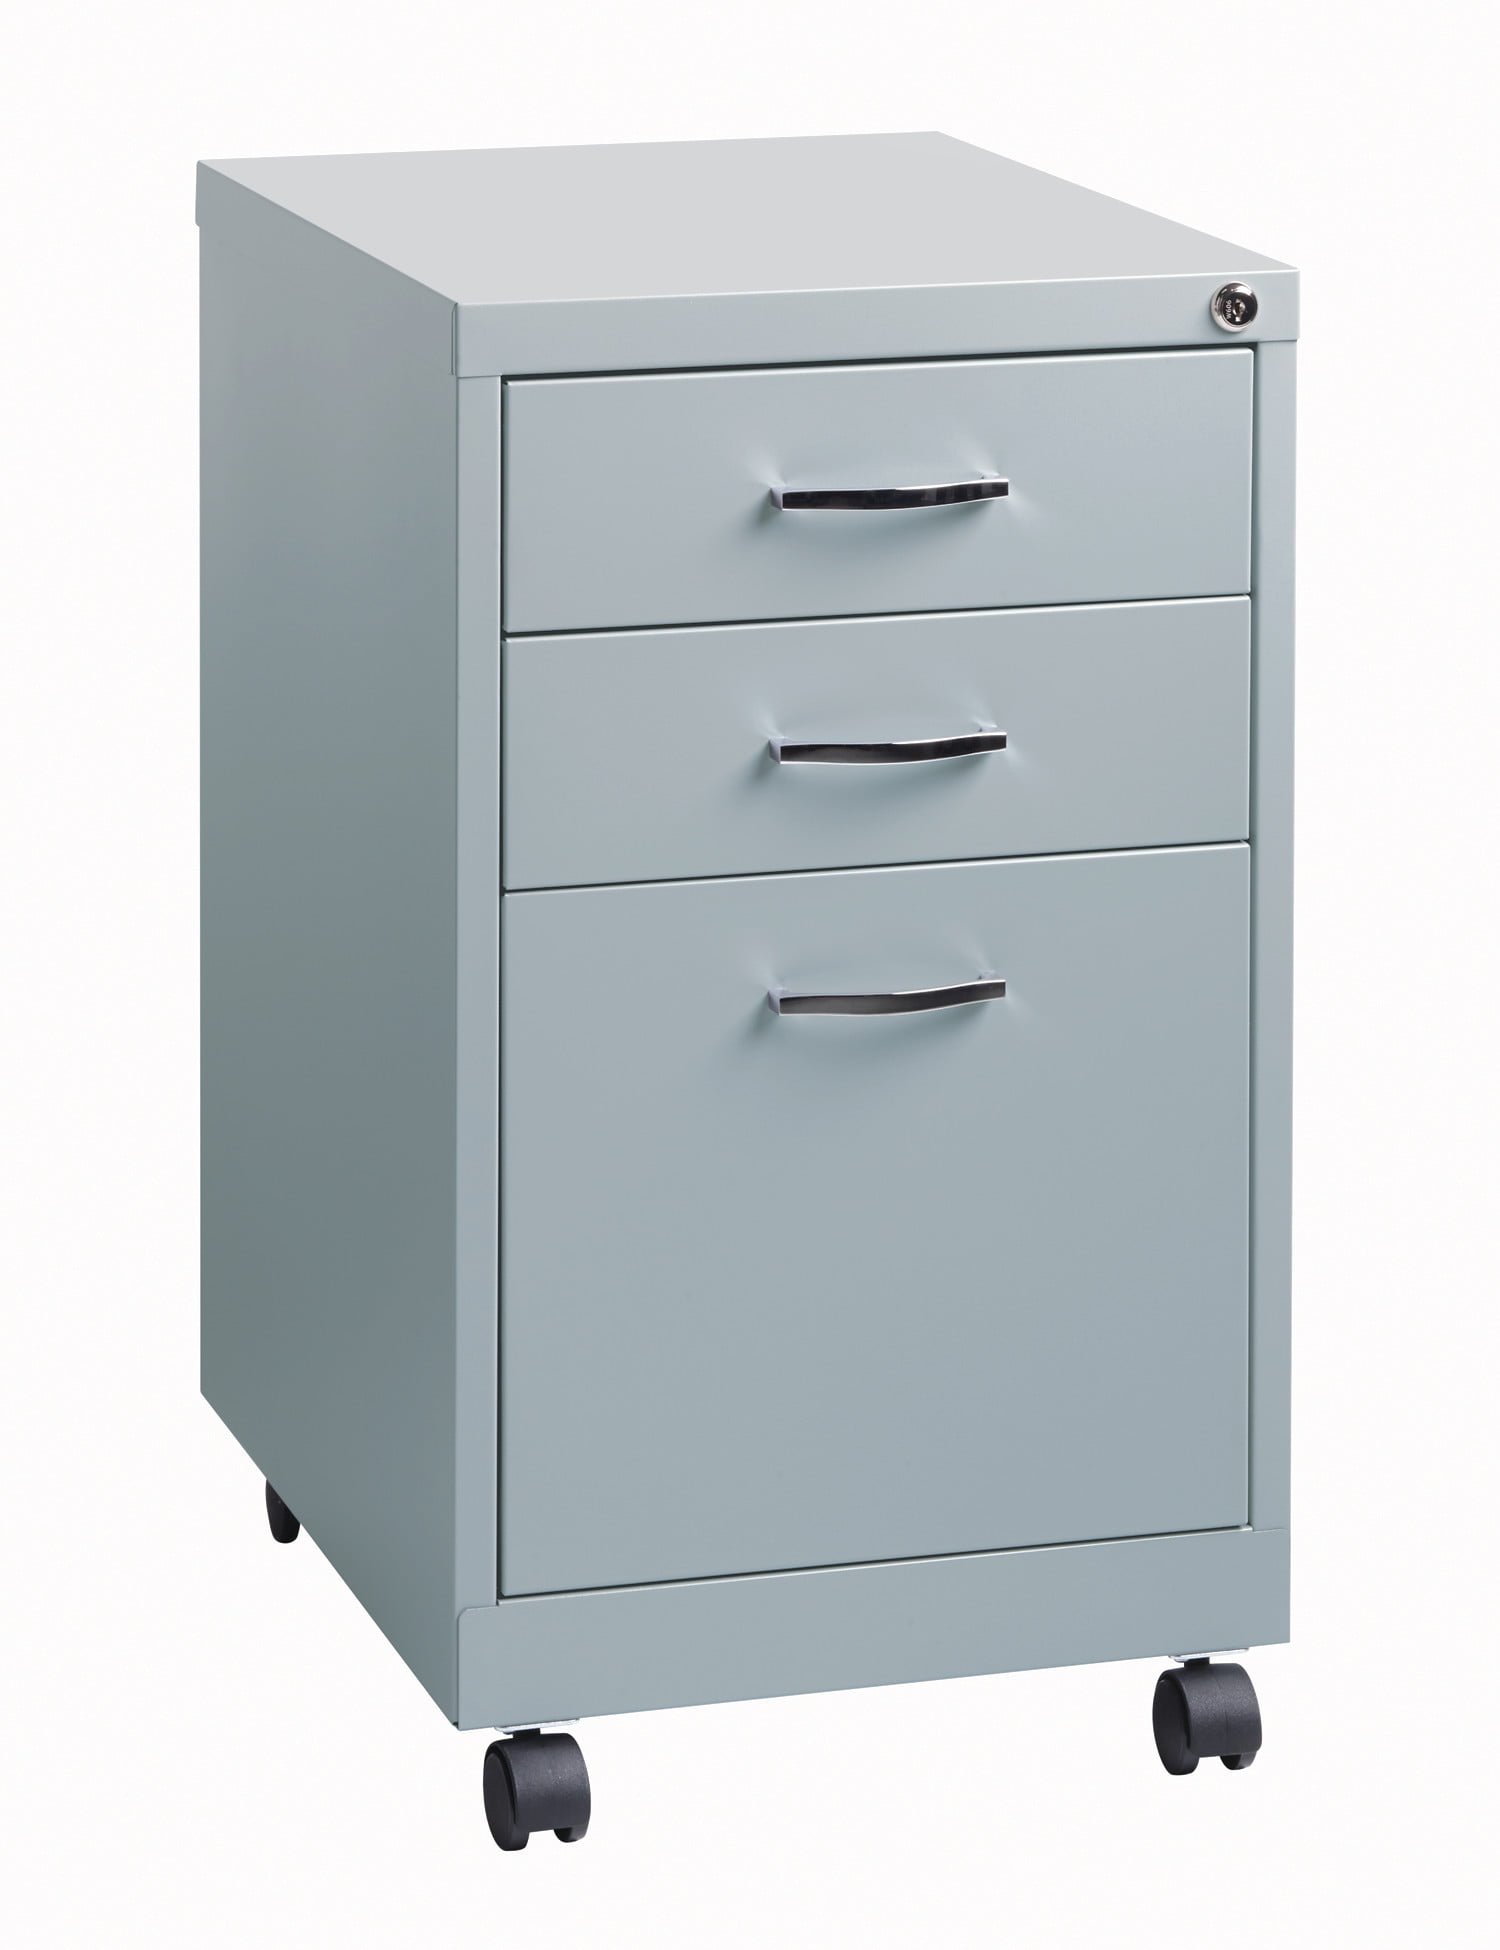 3 Drawers Mobile Pedestal File Cabinet Office Storage Filing Cabinet Except for 5 Castors Under Desk Fully Assembled Metal Lockable System MOOSENG